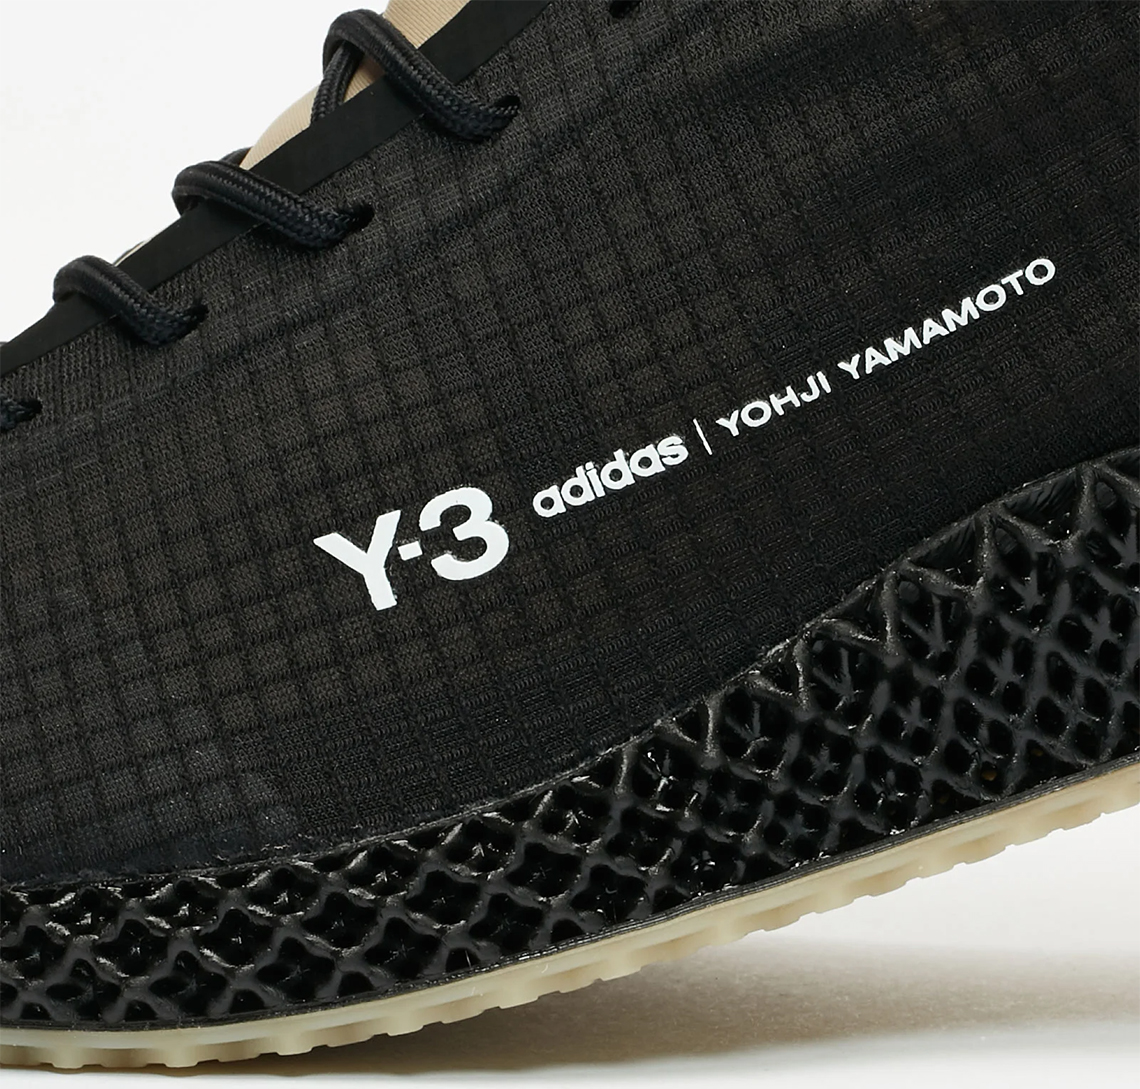 Adidas Y 3 Runner 4d Core Black Chalk White Fx1058 9